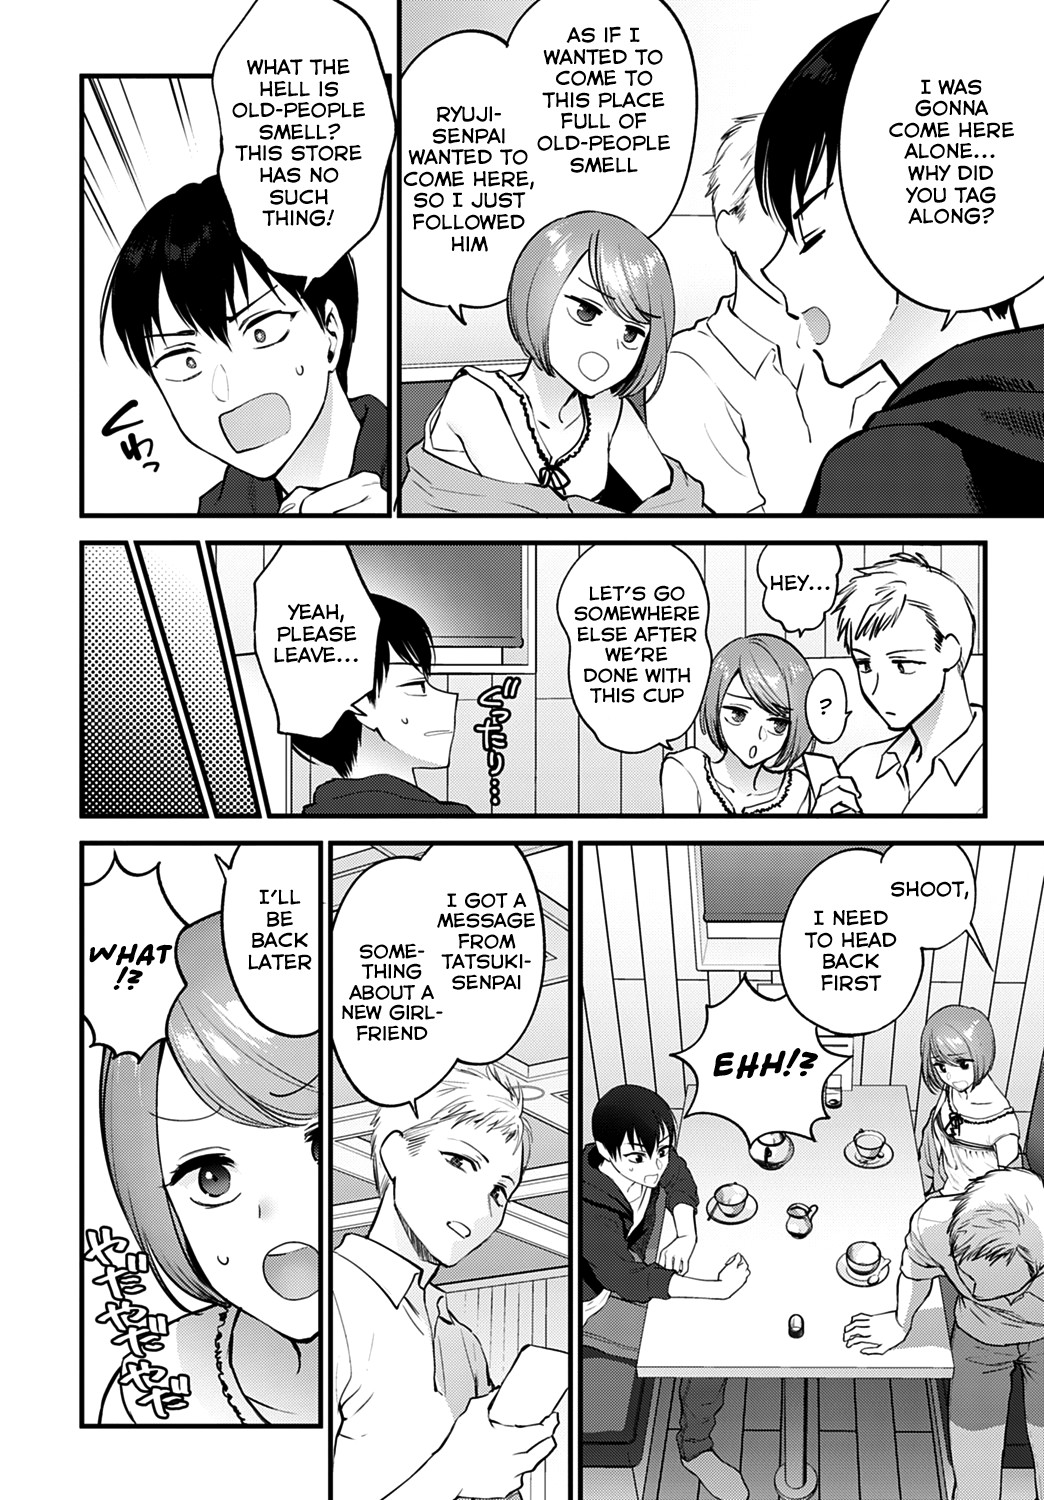 Hentai Manga Comic-How Do We Keep Love?-Read-2